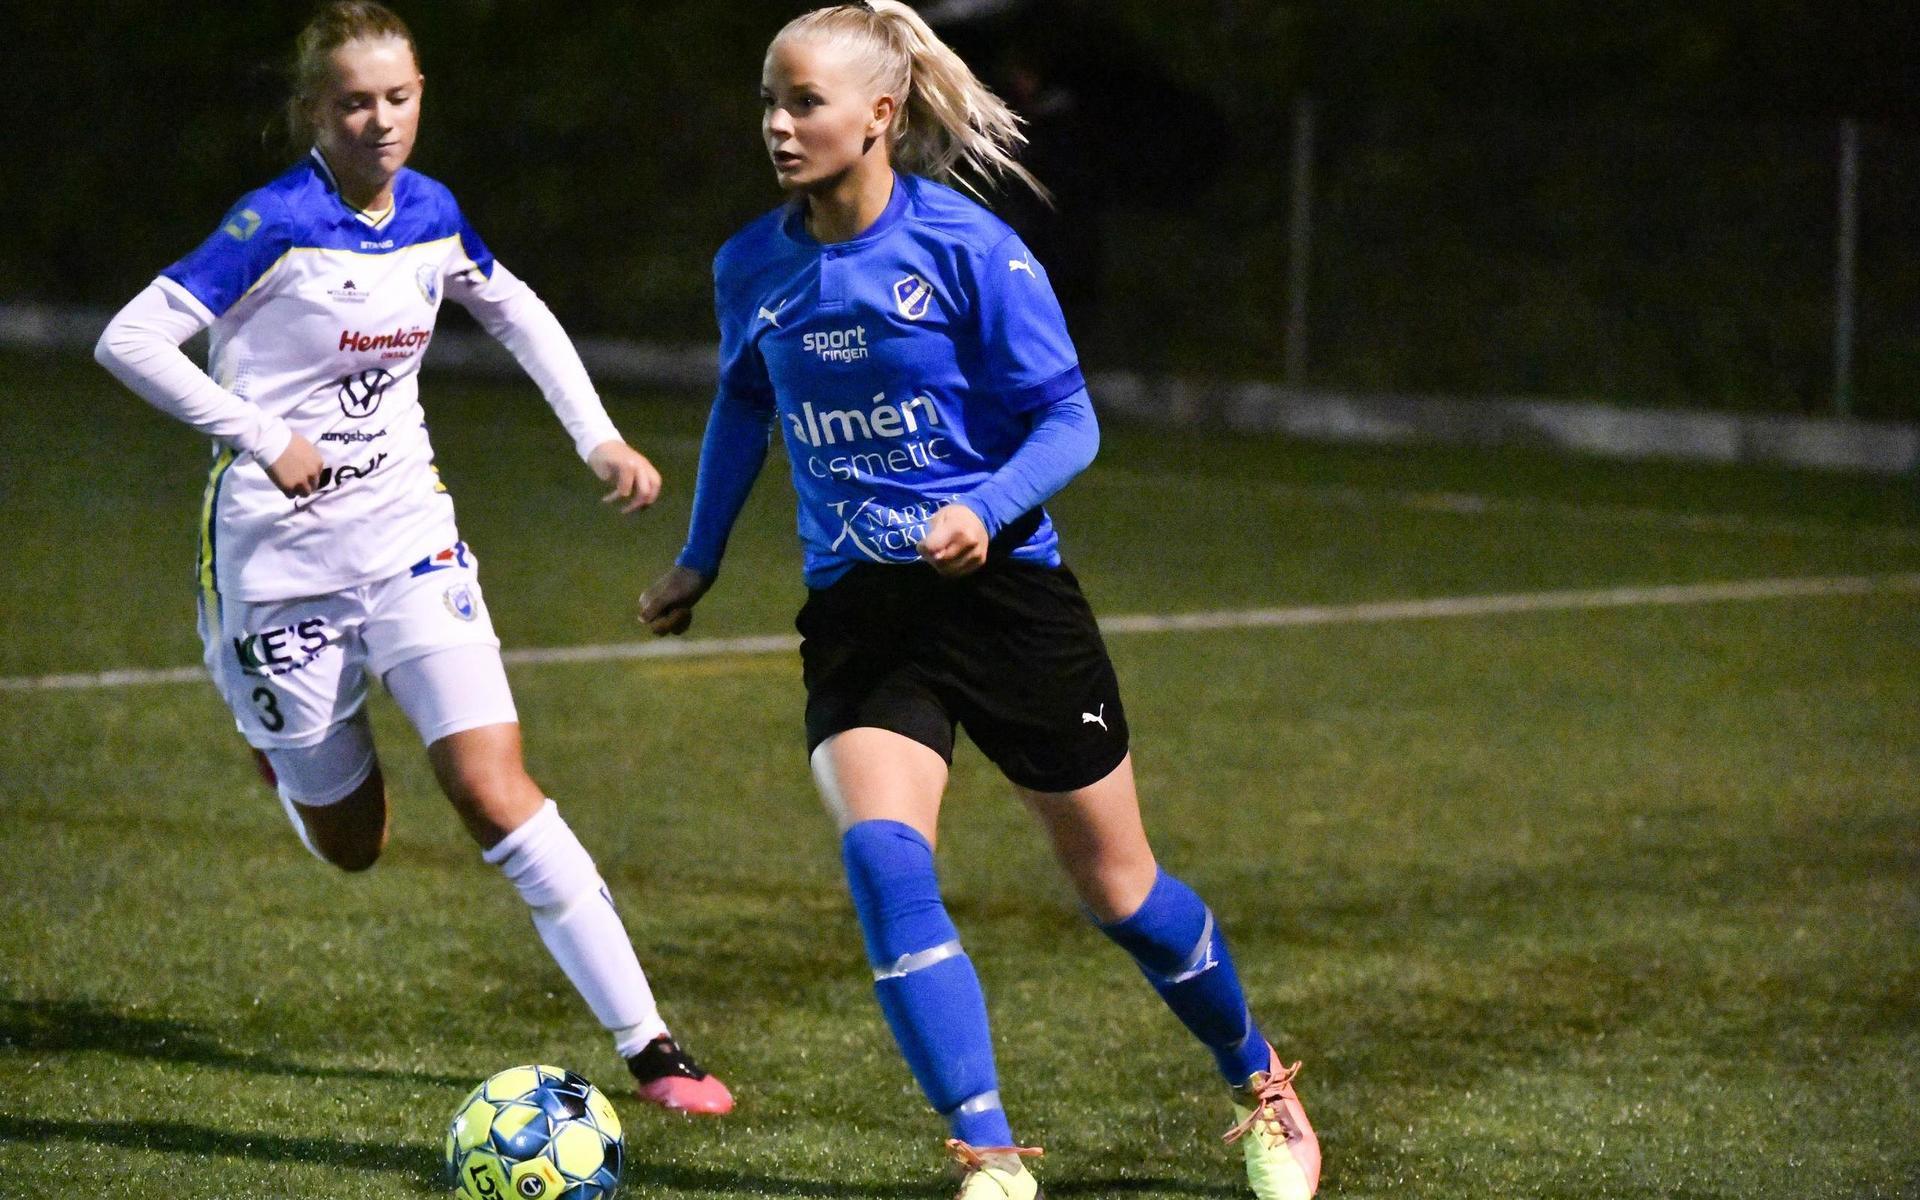 HBK:s dam hade hoppats på att få spela derbyt mot Halmia i division 1 på Örjans vall, men det gick inte.